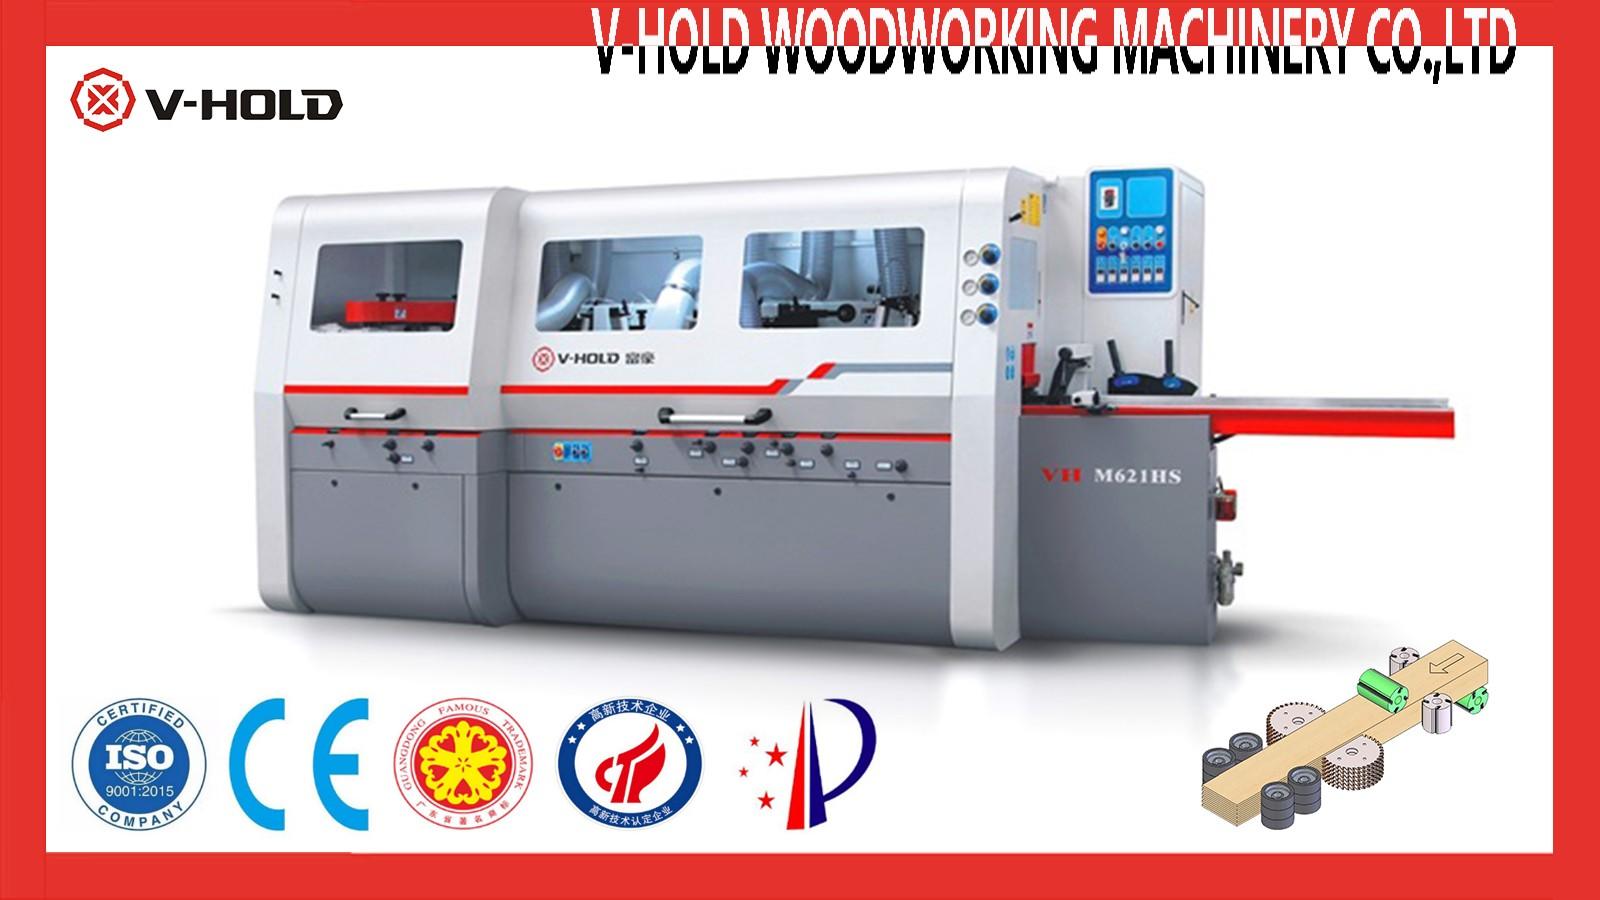 V-hold Machinery planer moulder for sale vendor for HDF